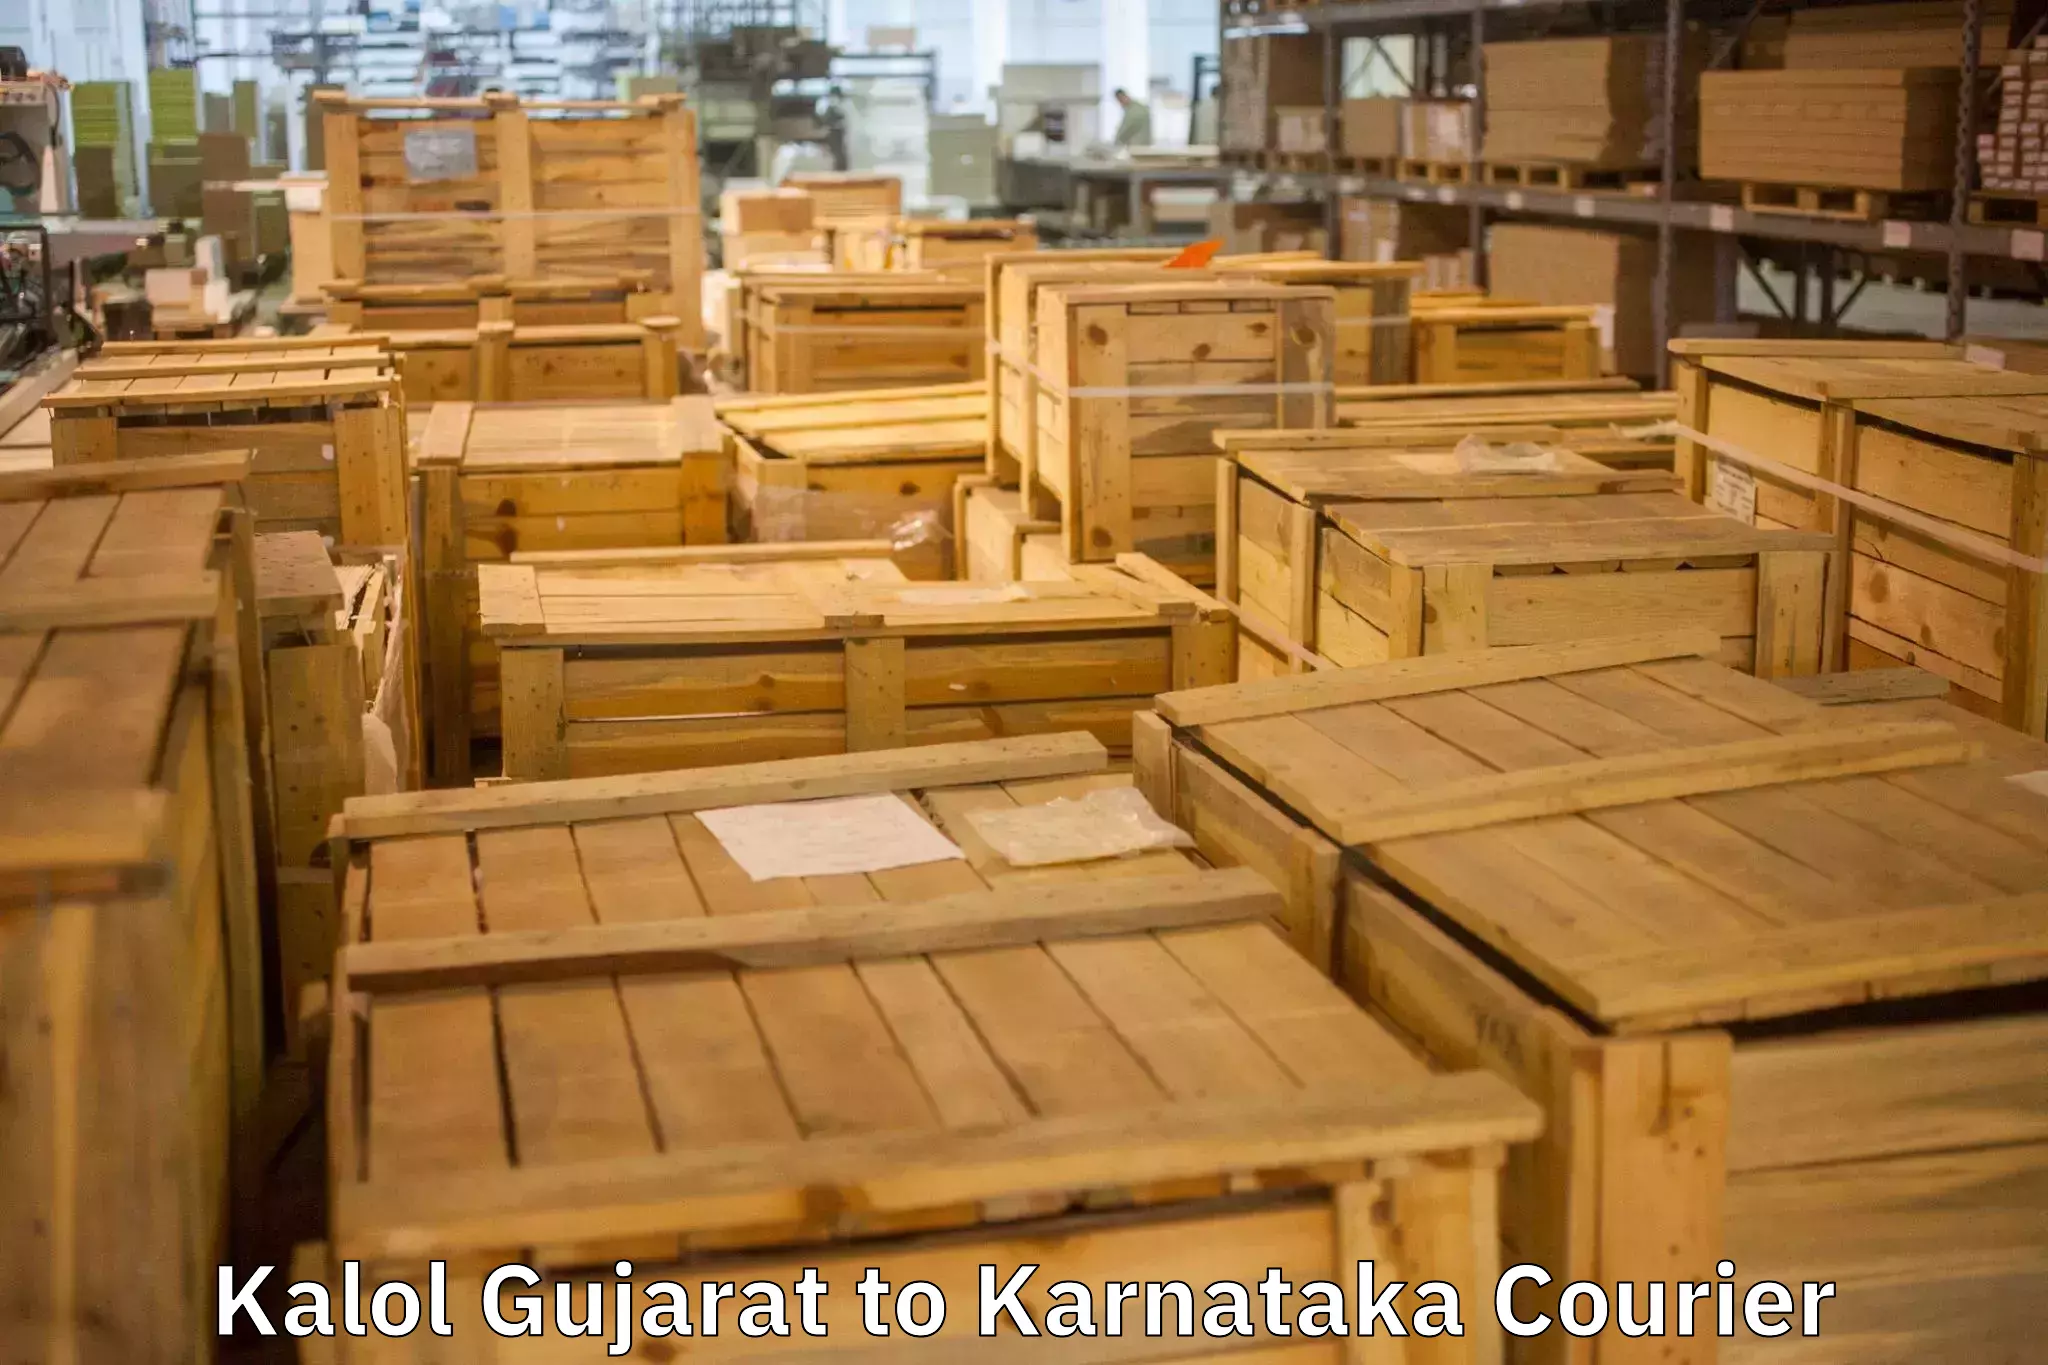 Furniture transport service Kalol Gujarat to Bangarapet